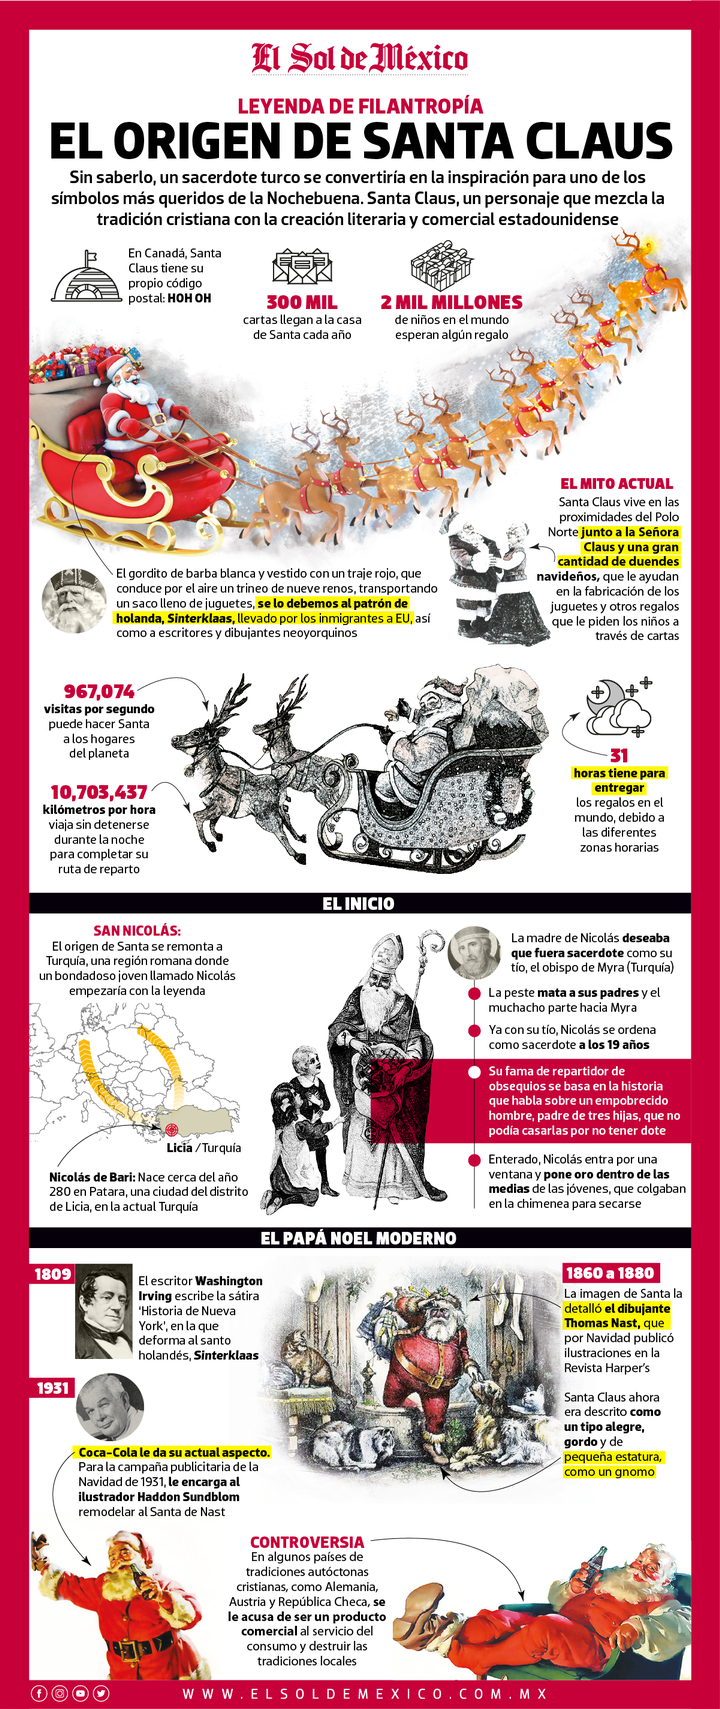 El origen de Santa Claus.